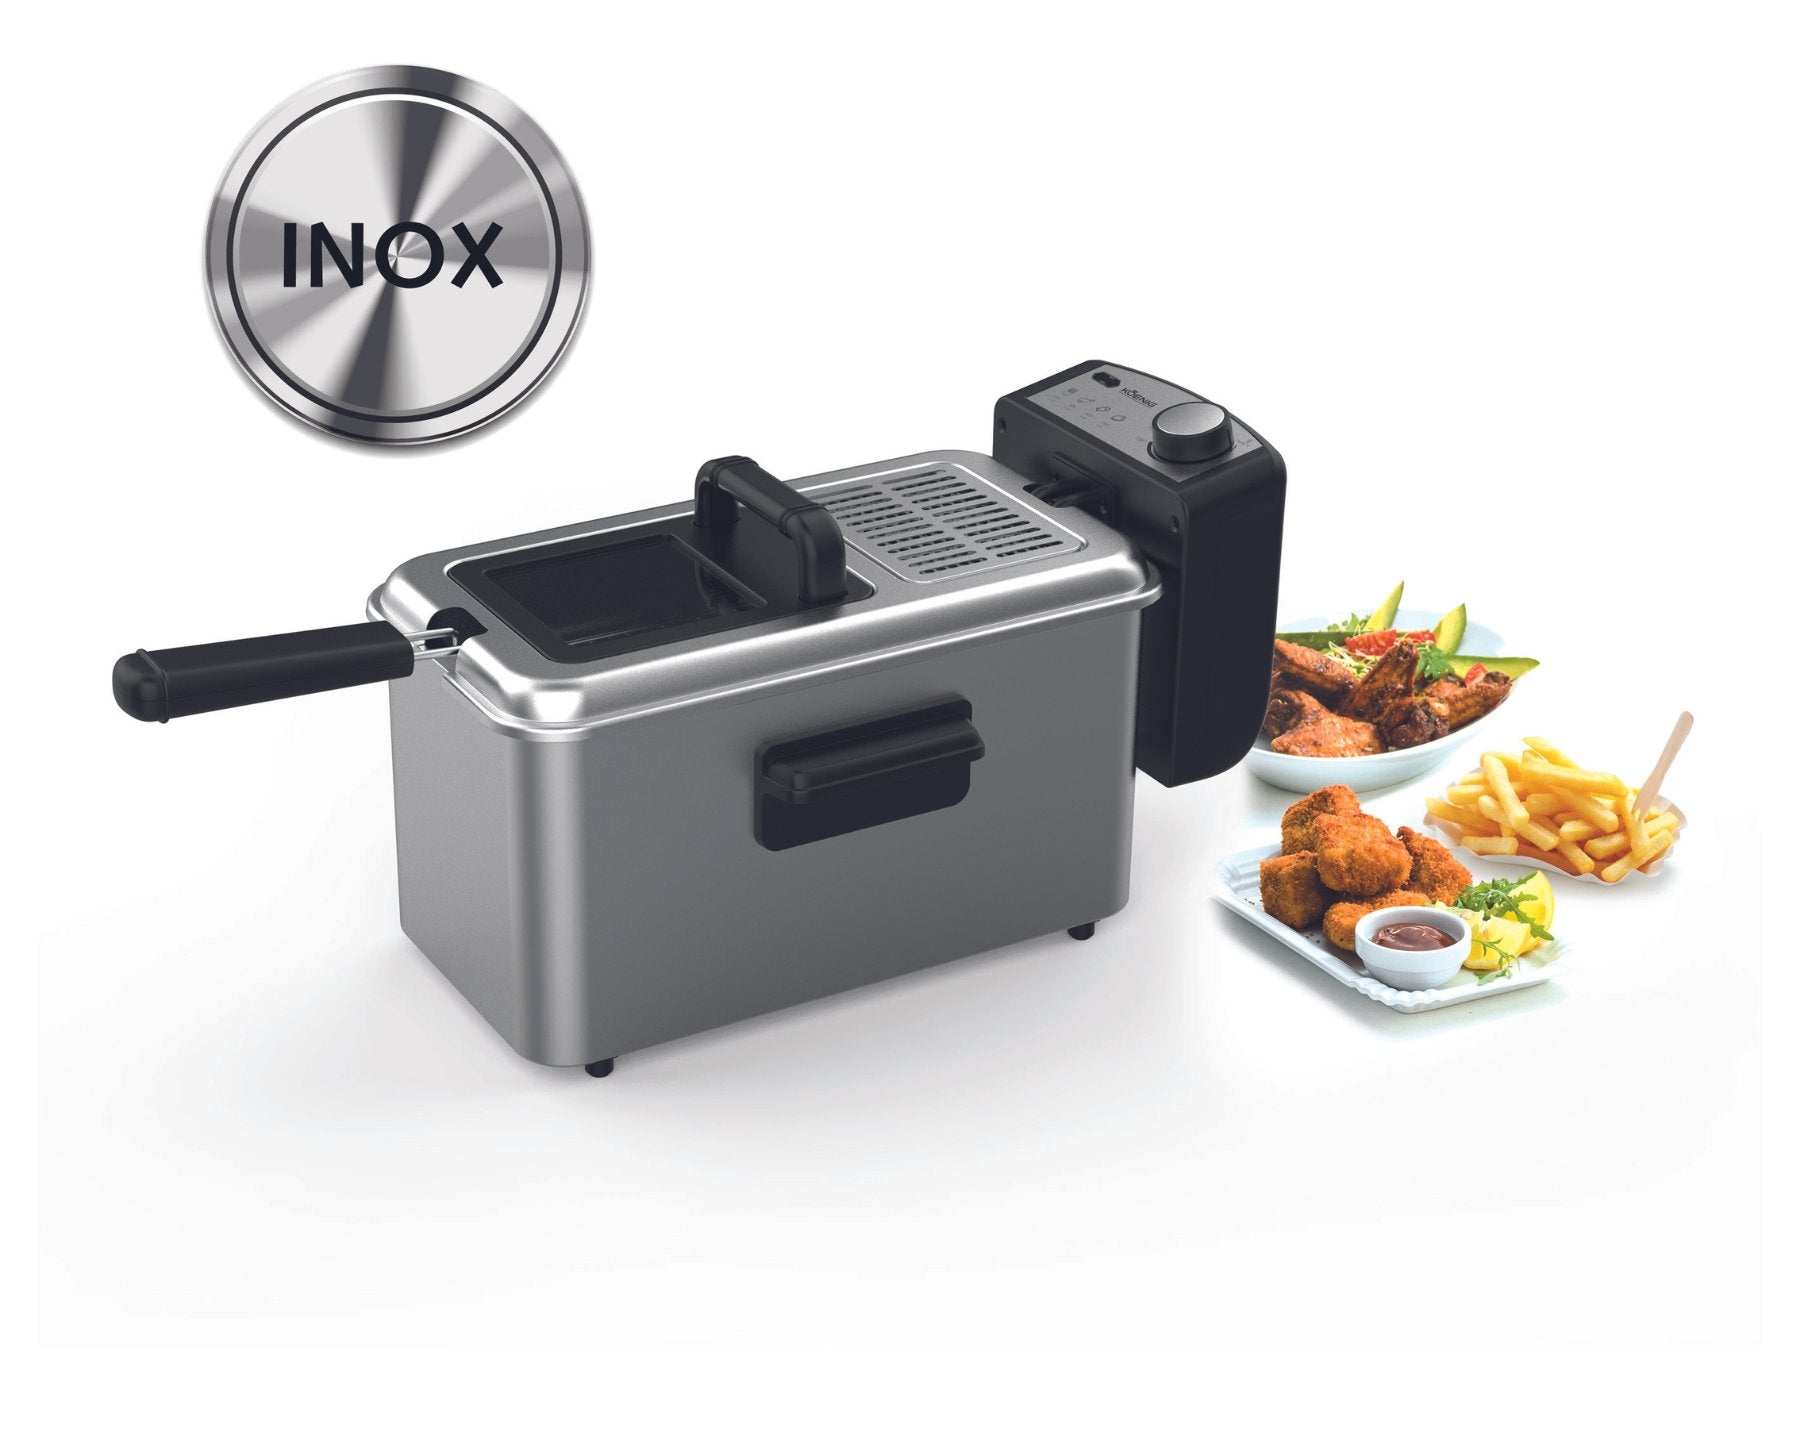 KOENIG Fritteuse INOX, 3 Liter - kitchen-more.ch, kostenloser Versand in der ganzen Schweiz